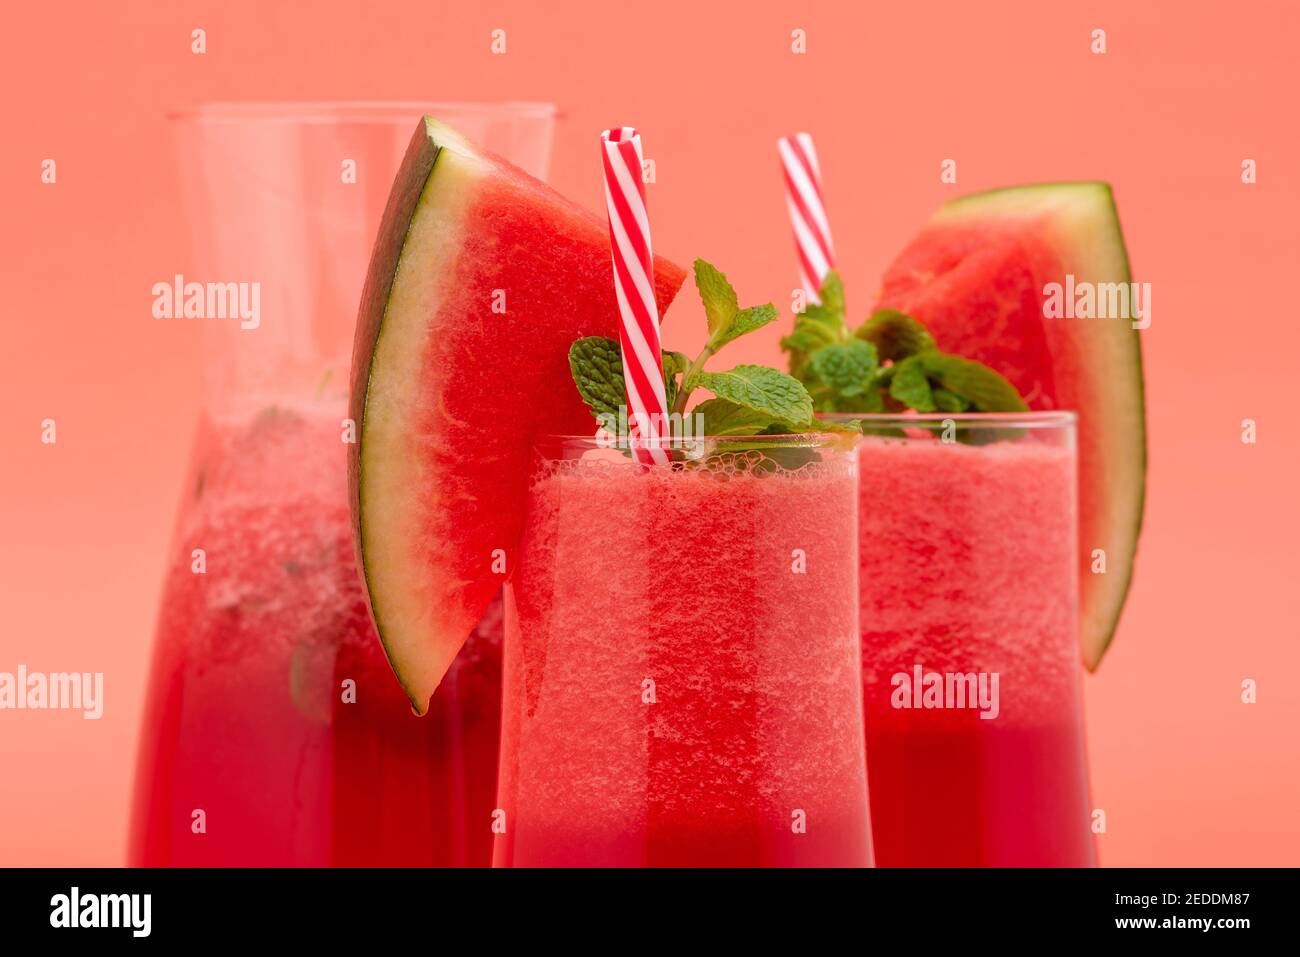 Refrescante jugo de fruta de sandía fría smoothies bebidas en los vasos sobre fondo rosa coral Foto de stock